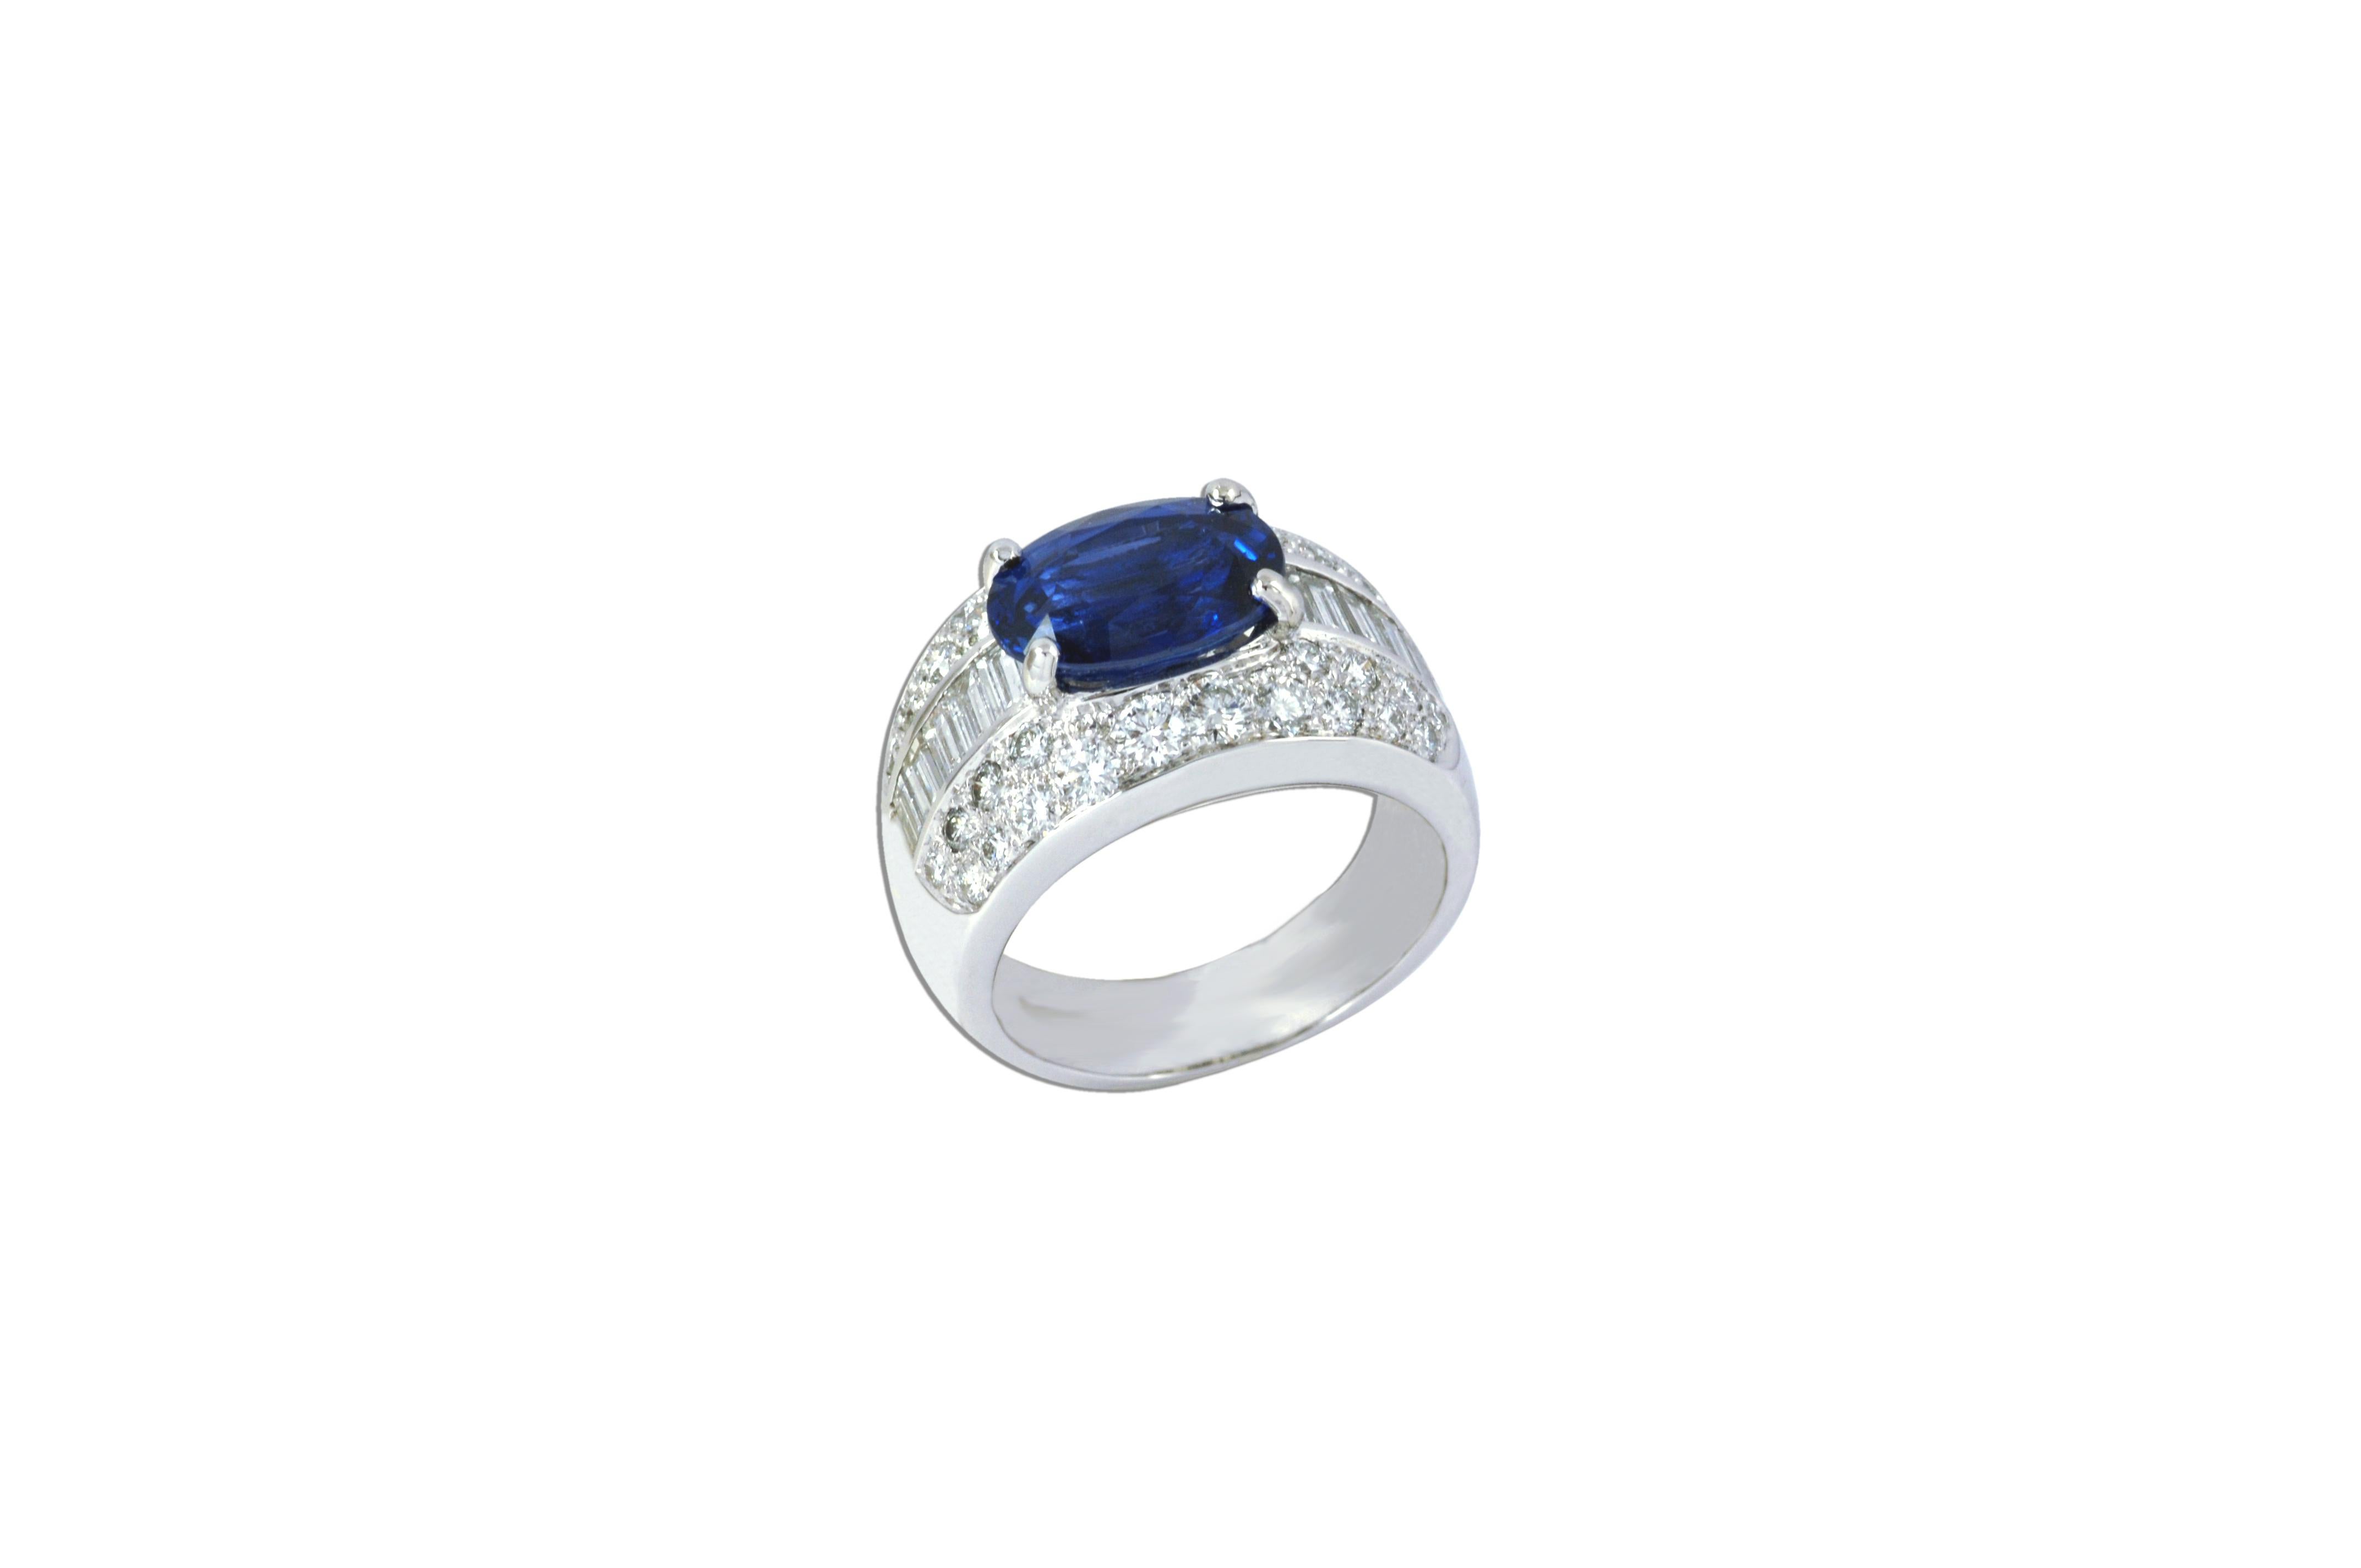 Blauer Saphir 4,34 Karat mit Diamant 1,94 Karat Ring in 18 Karat Weißgoldfassung

Breite: 2,5 cm
Länge: 1,5 cm
Ringgröße: 55


